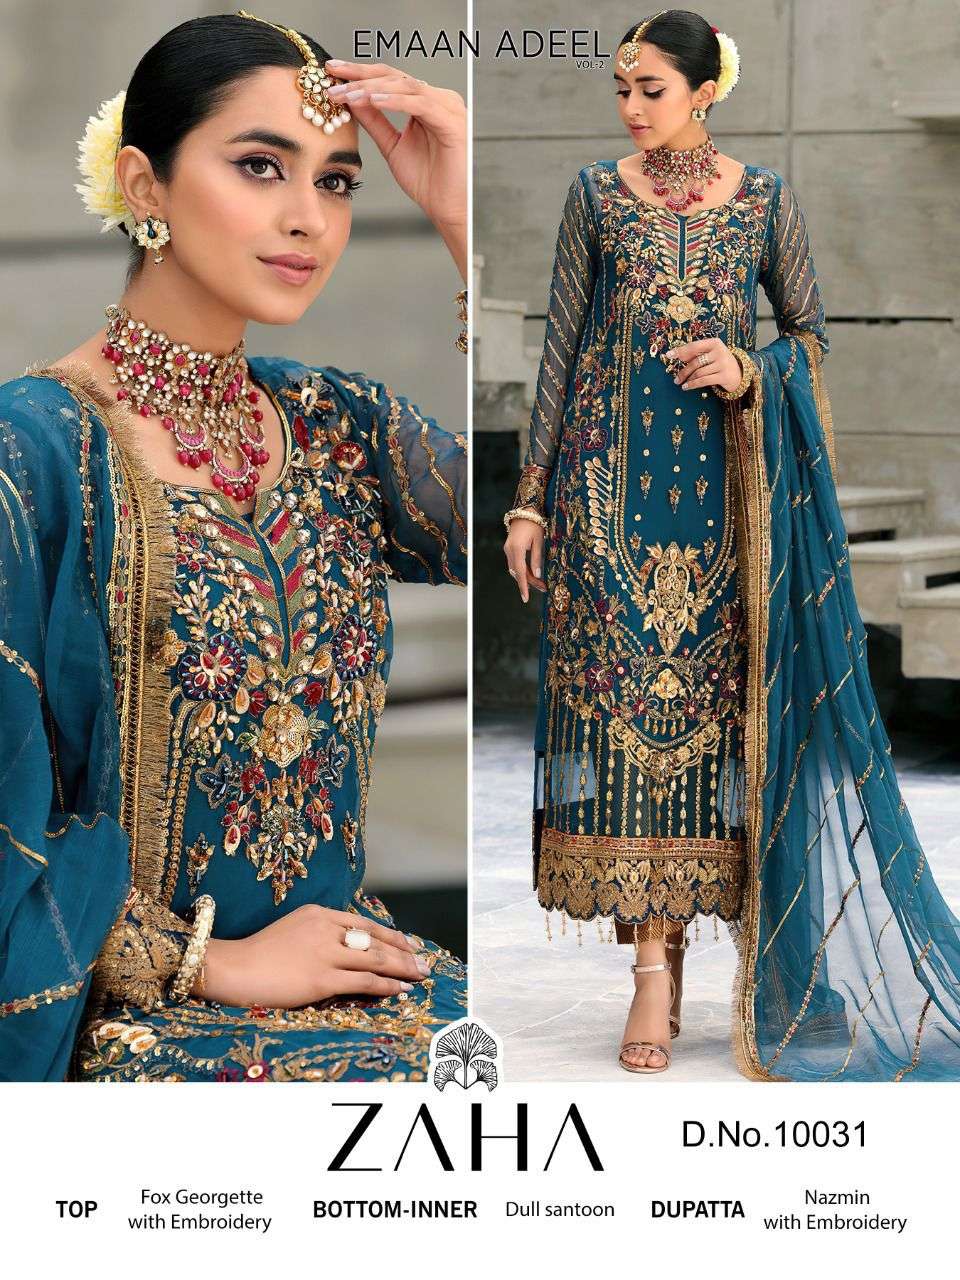 zaha by emaan adeel vol 2 designer pakistani salwar kameez online wholesaler surat 